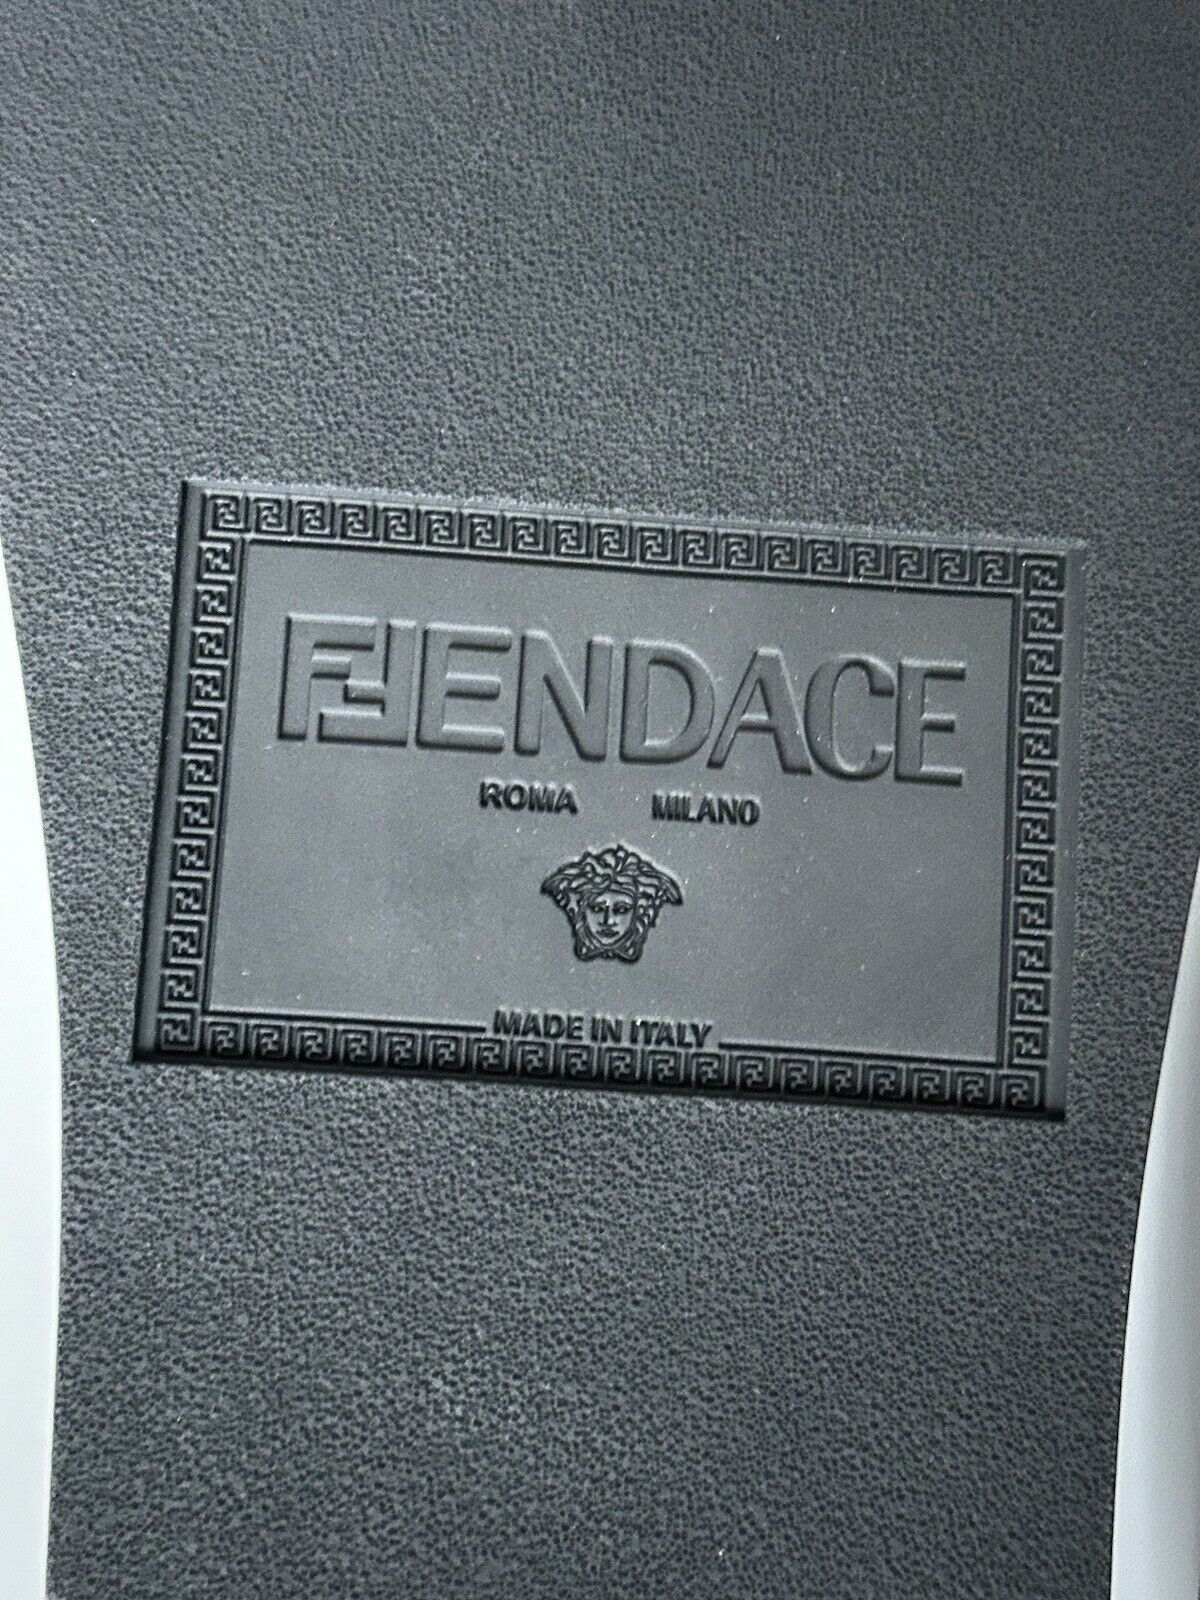 NIB 520 долларов США Fendace Резиновые шлепанцы Fendi&amp;Versace, черные 11 US/10 UK IT 7X1551 